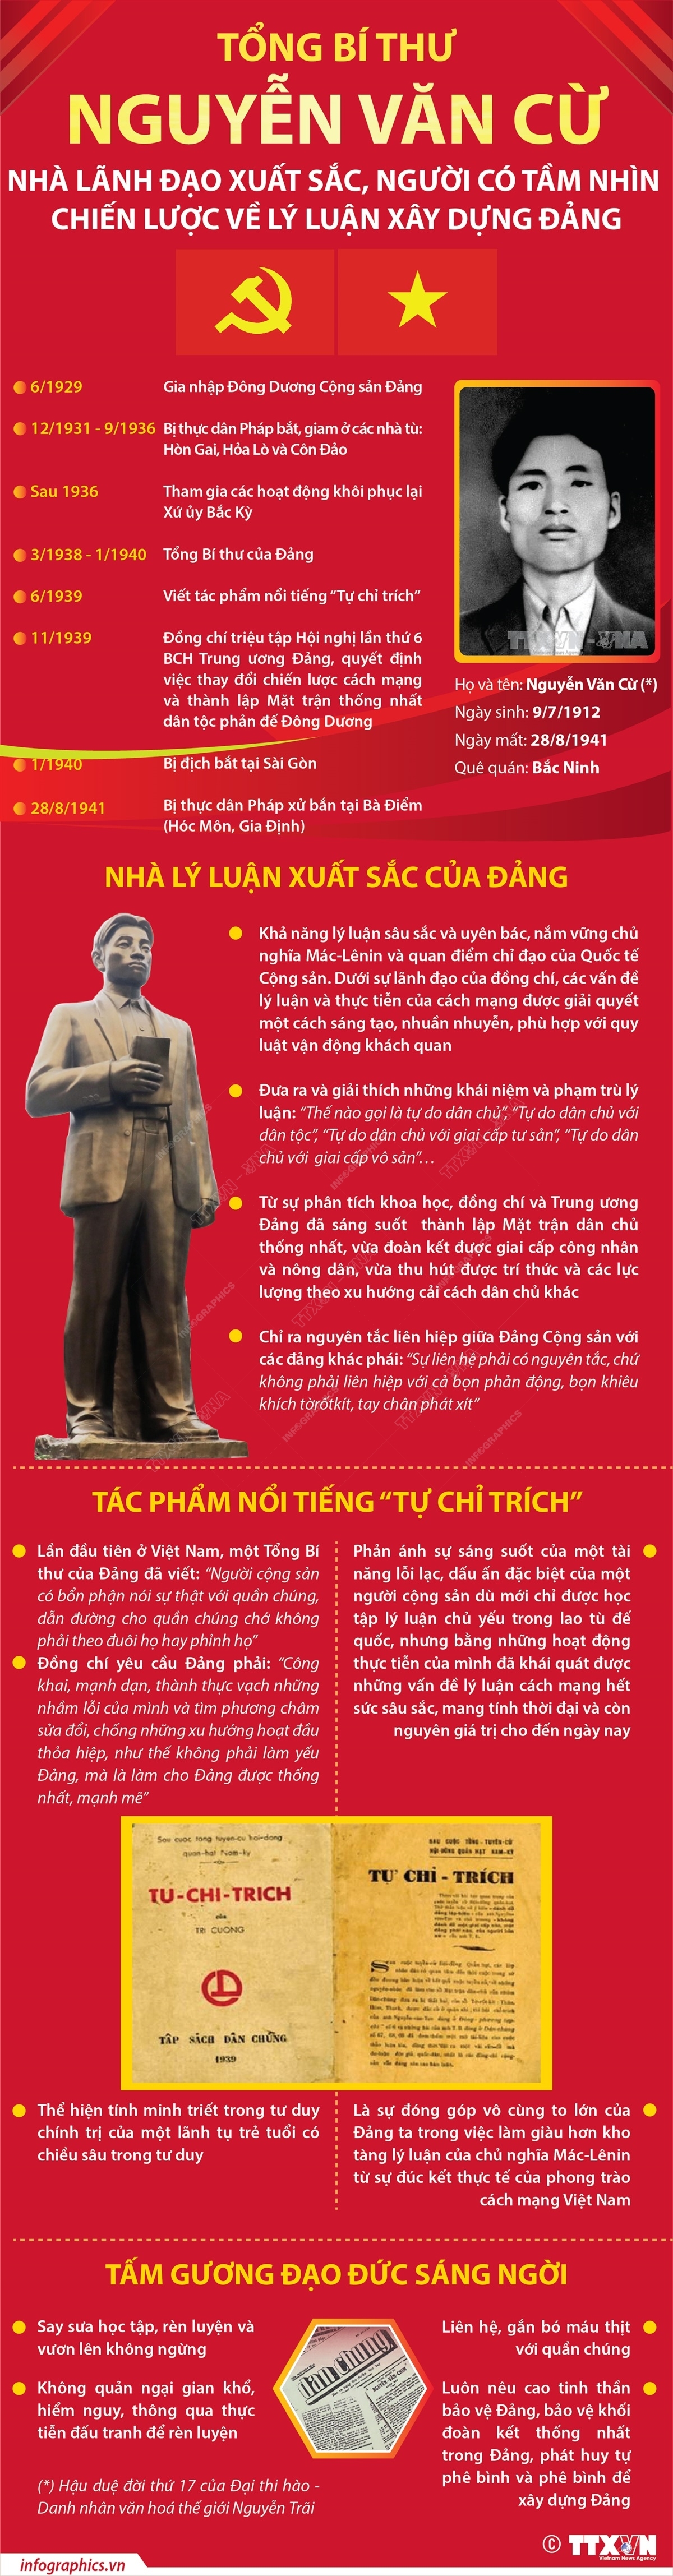 Tổng Bí thư Nguyễn Văn Cừ - Nhà lãnh đạo xuất sắc, người có tầm nhìn chiến lược